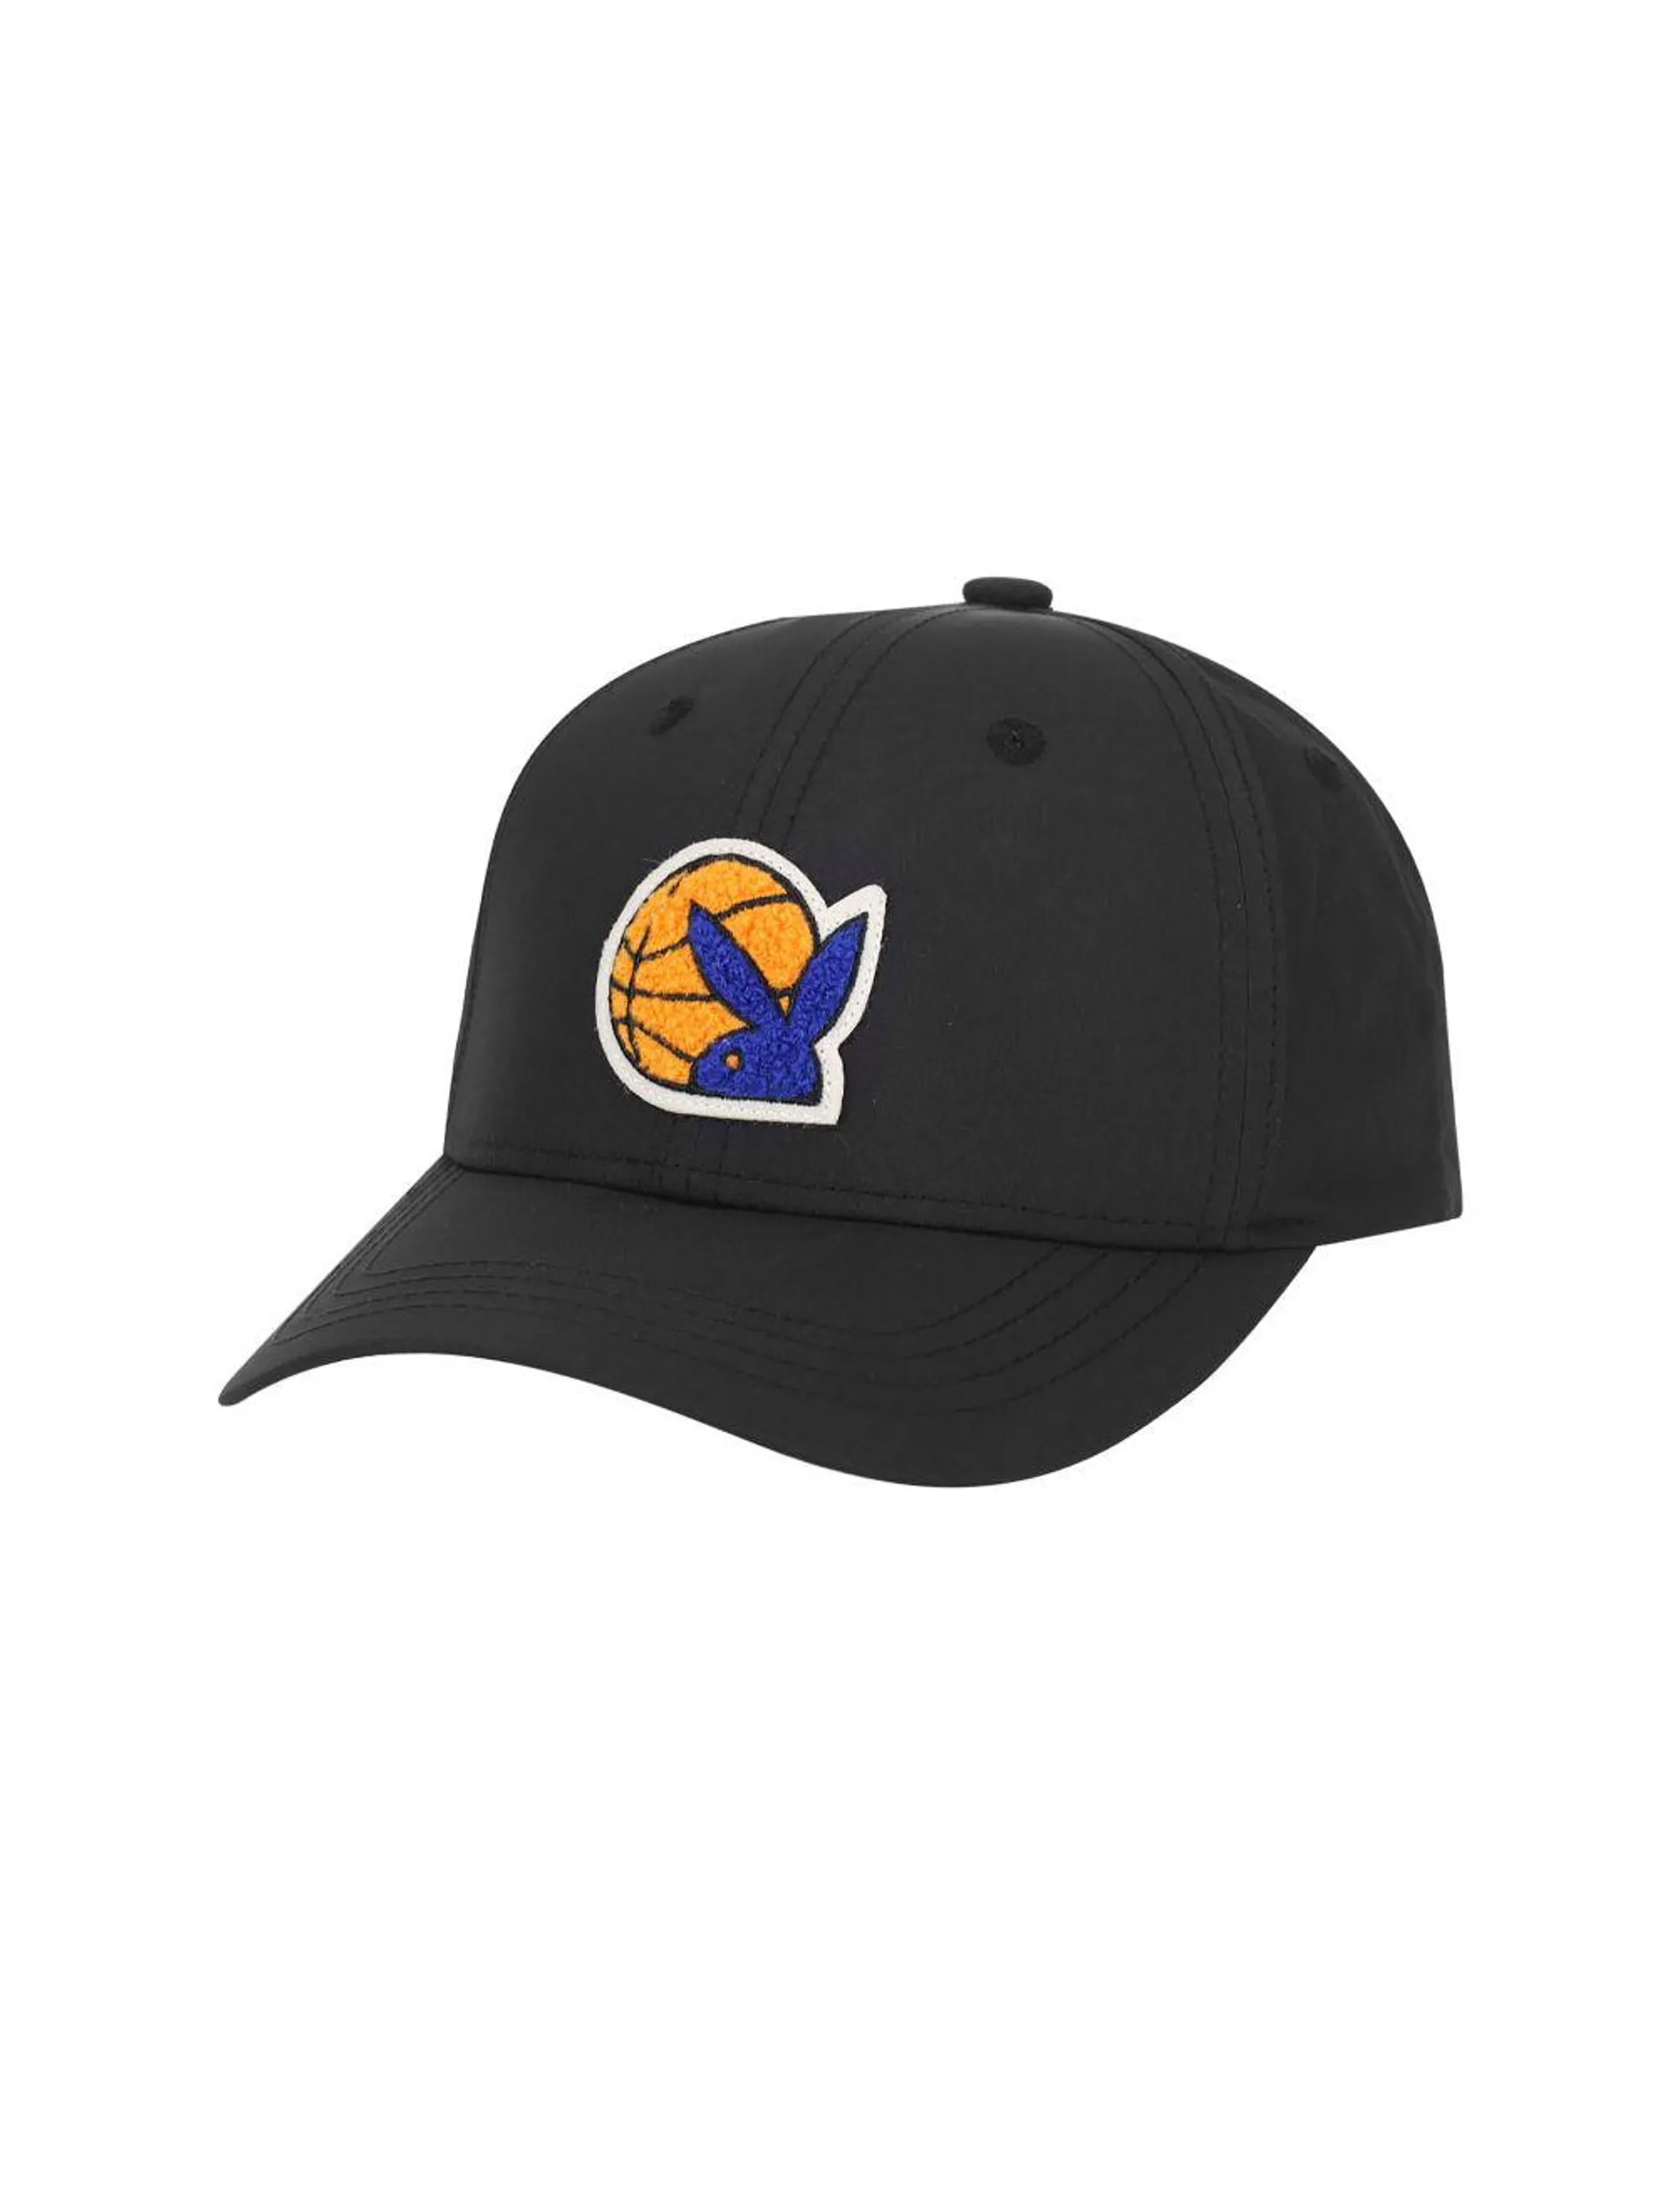 Playboy Basketball Emblem Cap Black